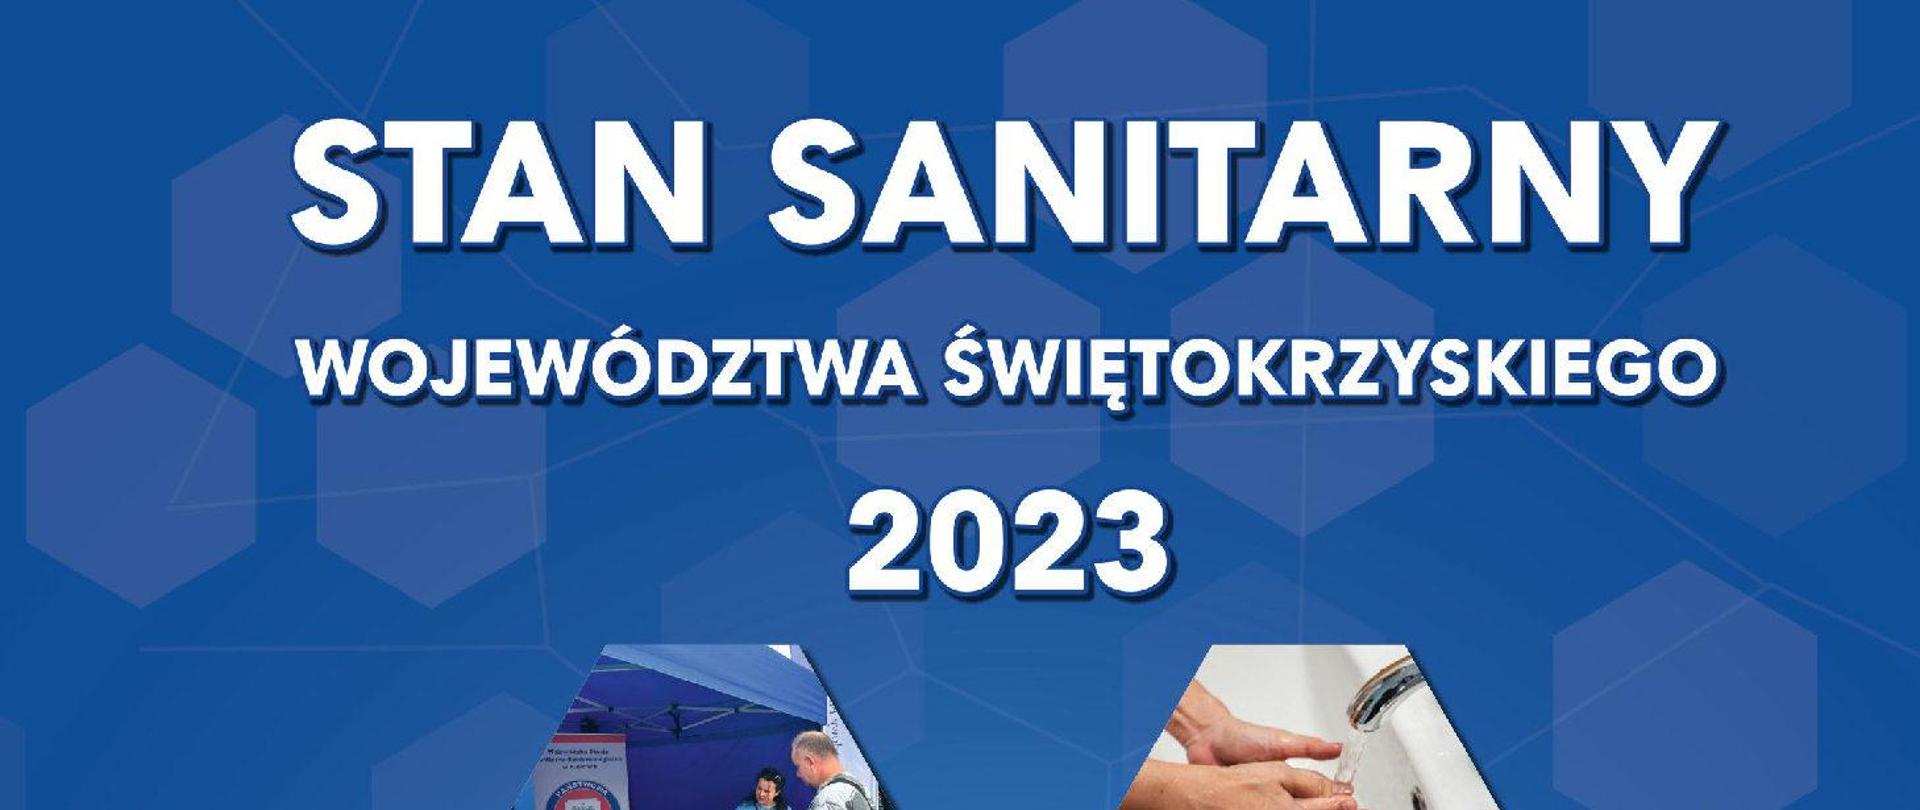 Napis "Stan sanitarny województwa świętokrzyskiego 2023" na niebieskim tle.